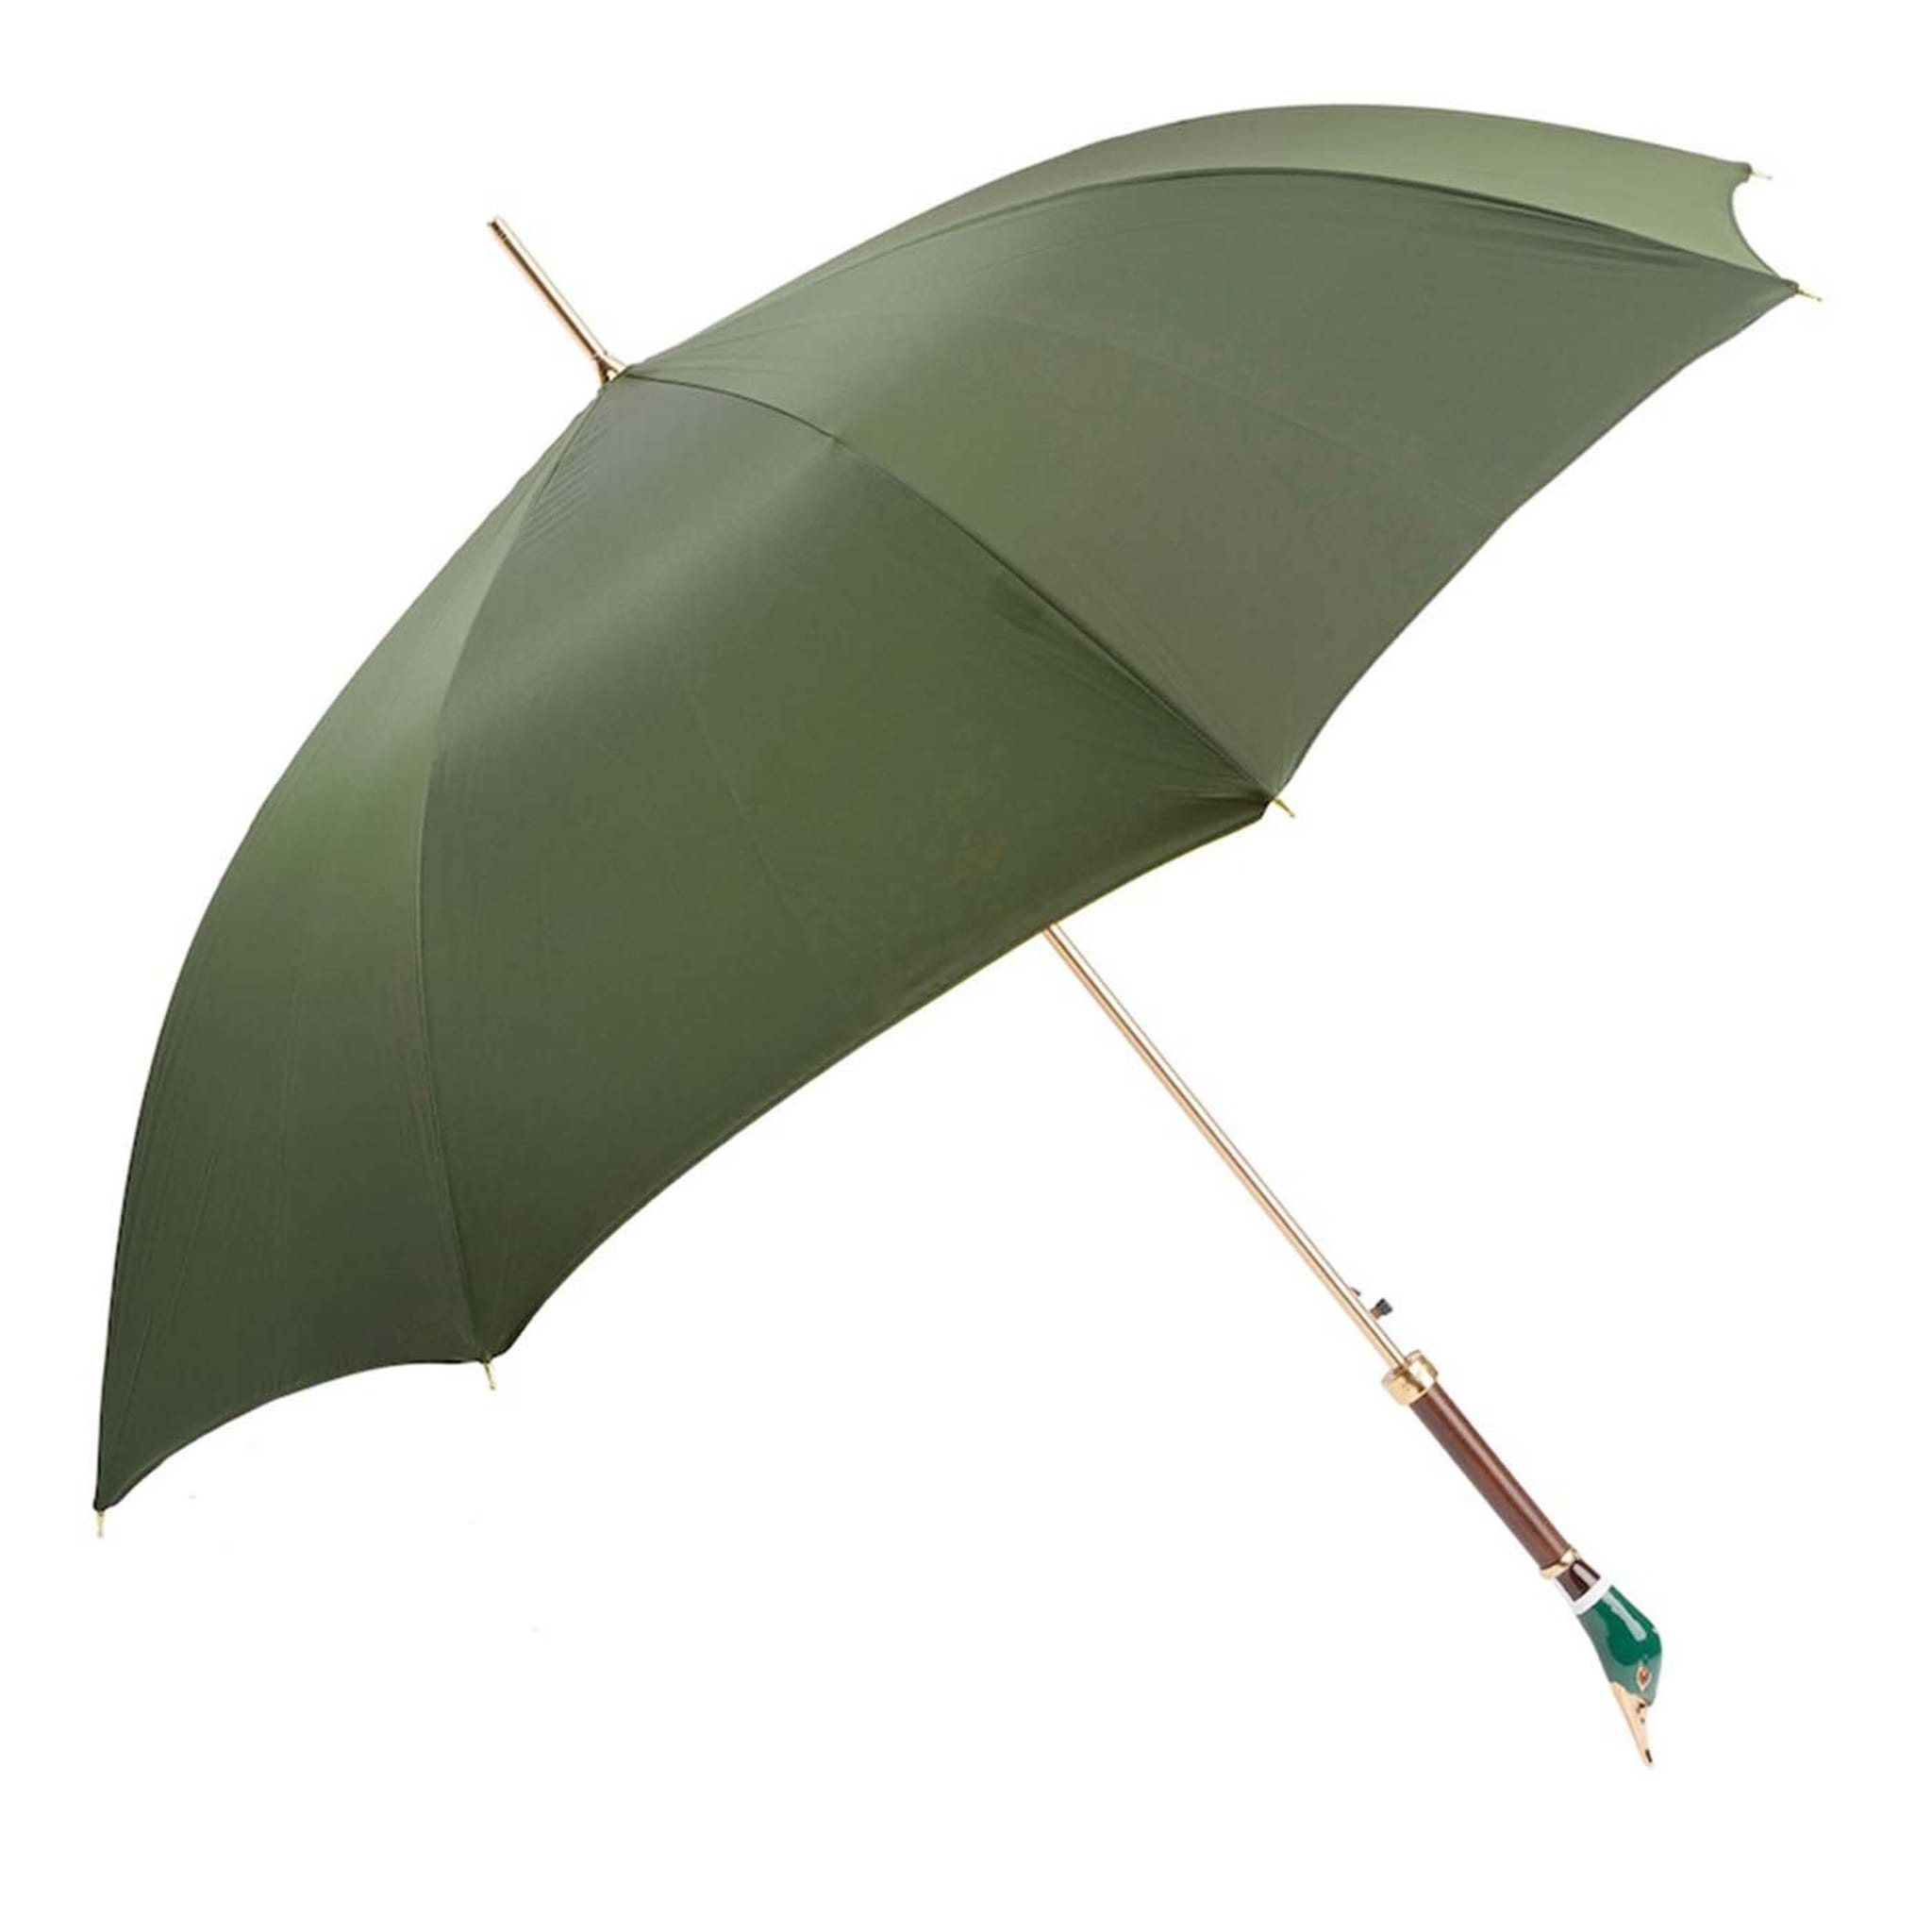 Grüner Regenschirm mit Mallard-Griff - Hauptansicht